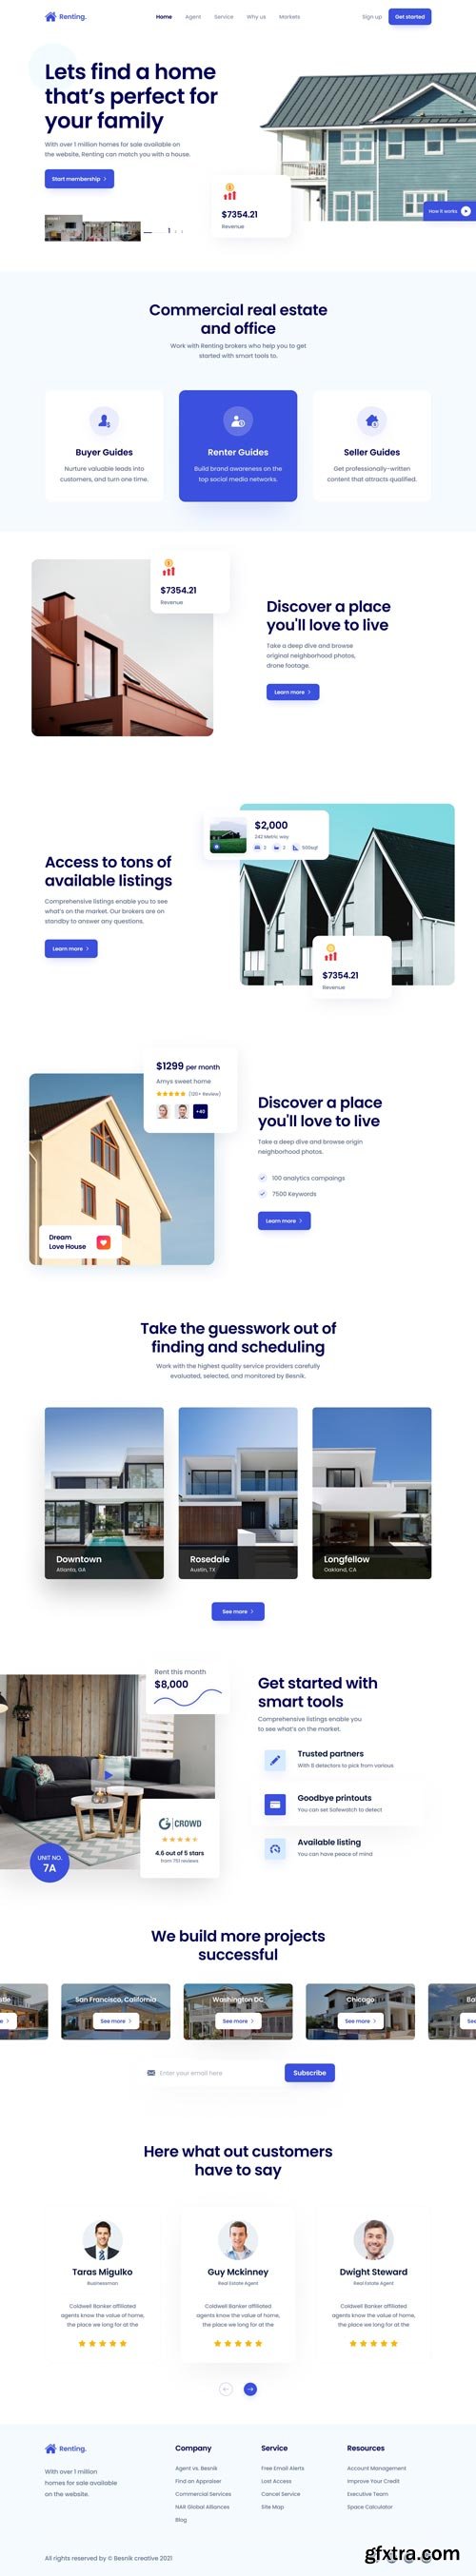 UiHut - Renting Real Estate Landing Page - 12116